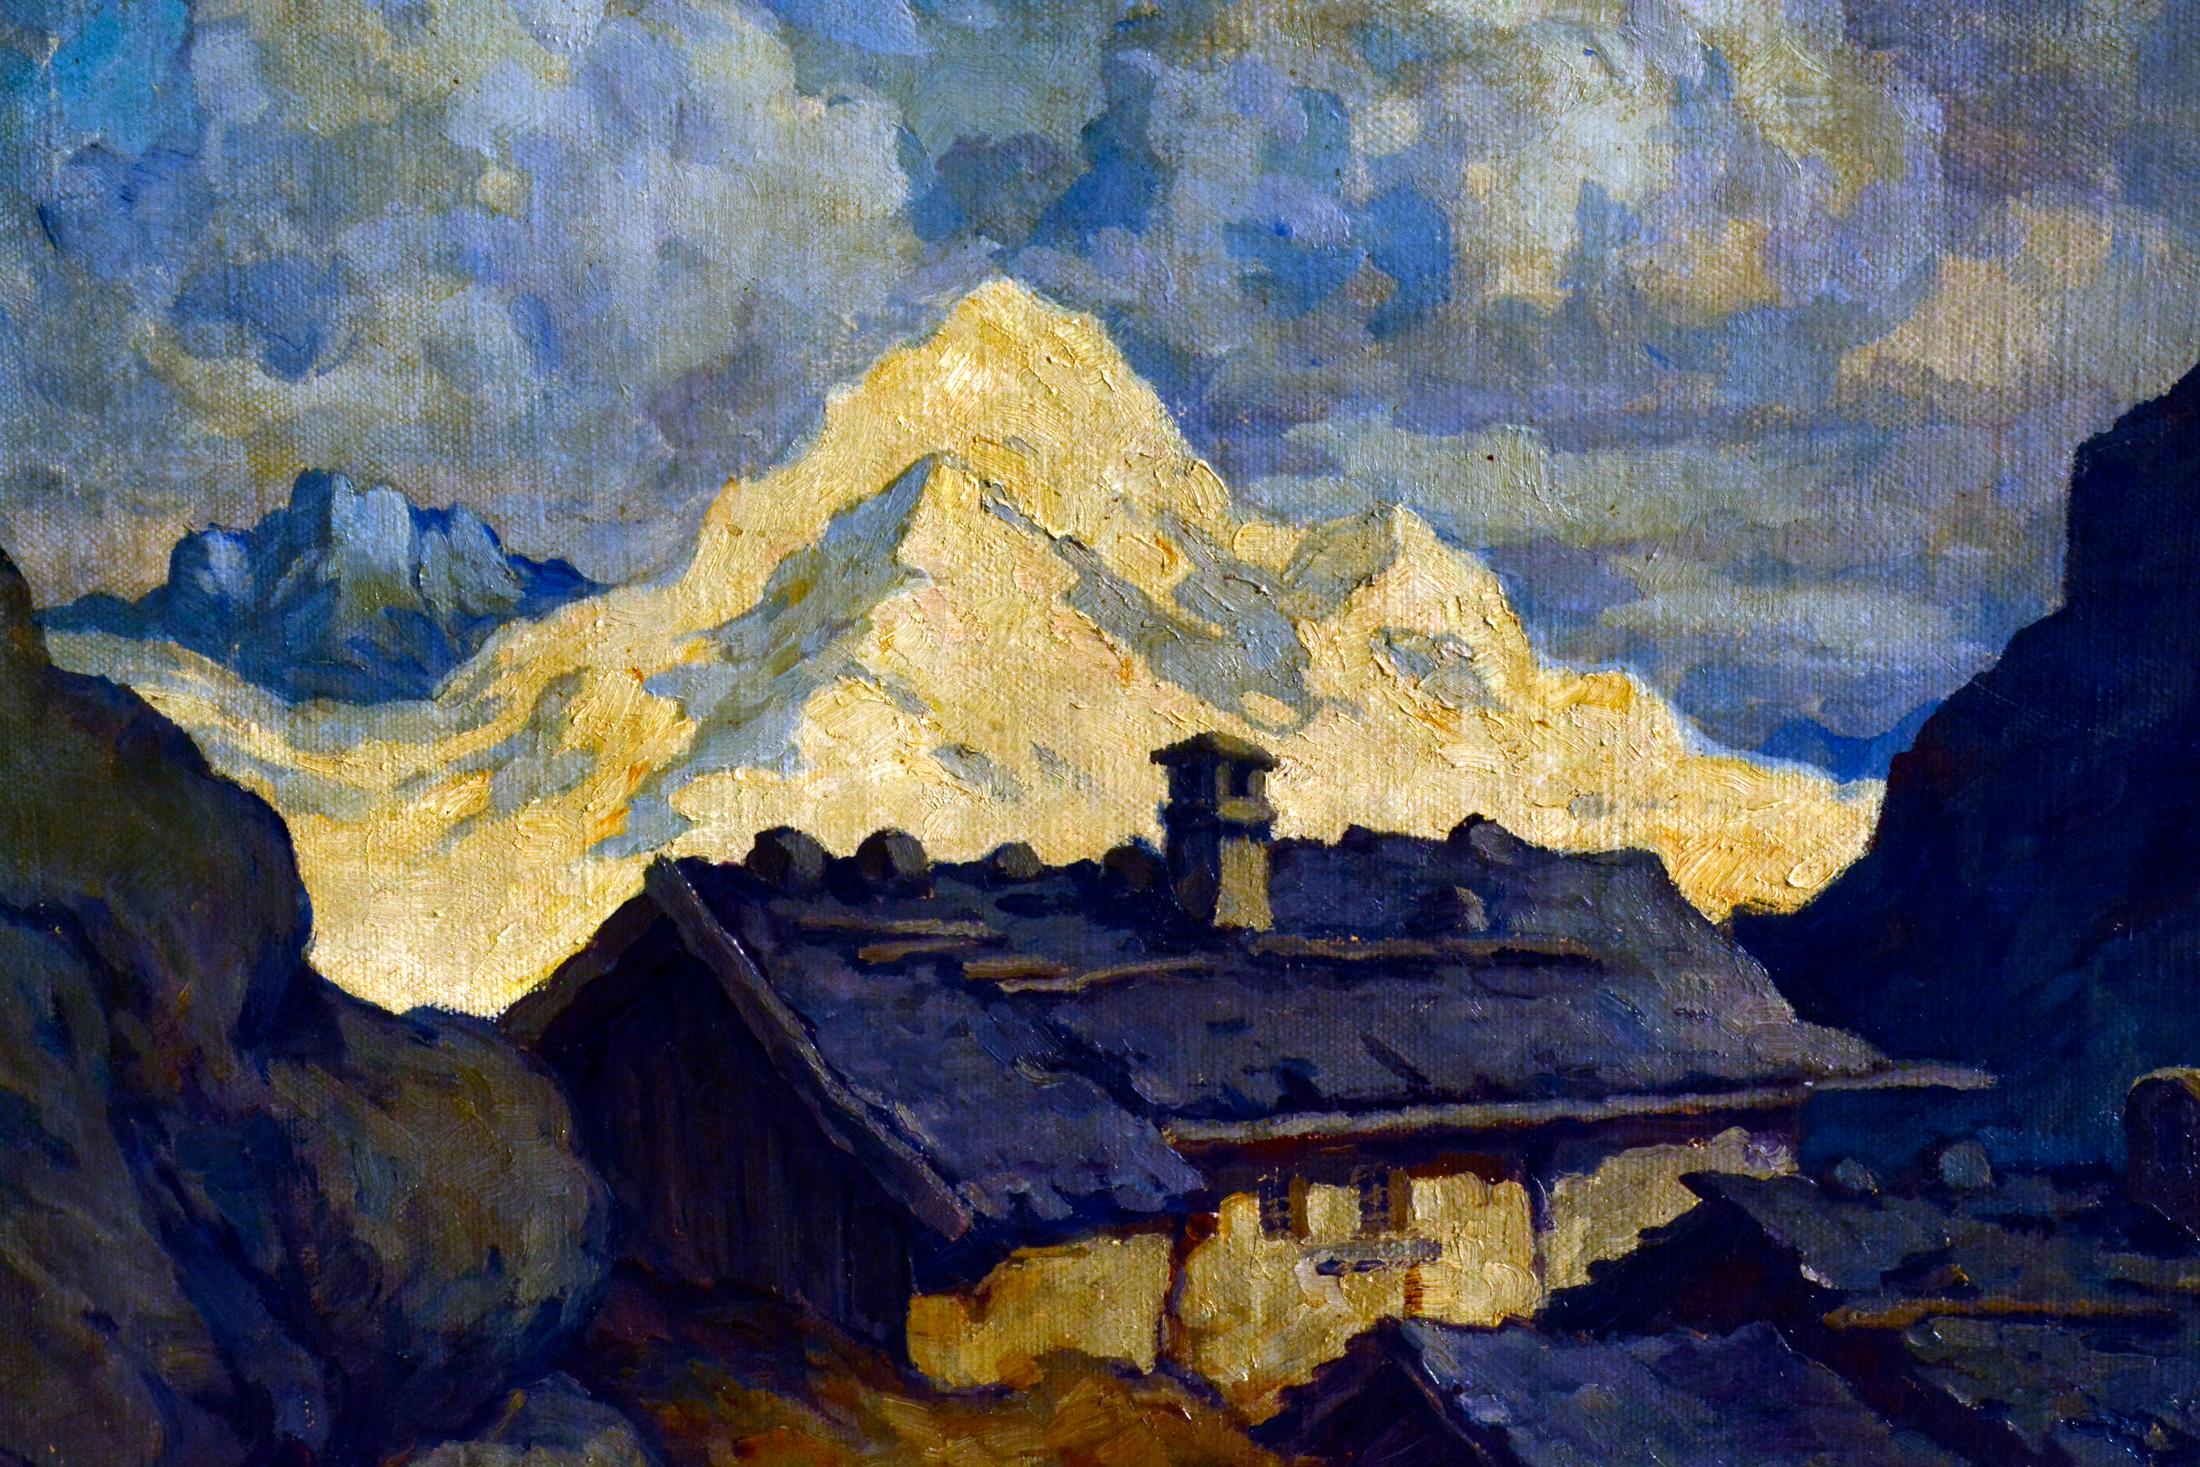 Modern Carl Knauf, Homestead in the Mountains, circa 1925